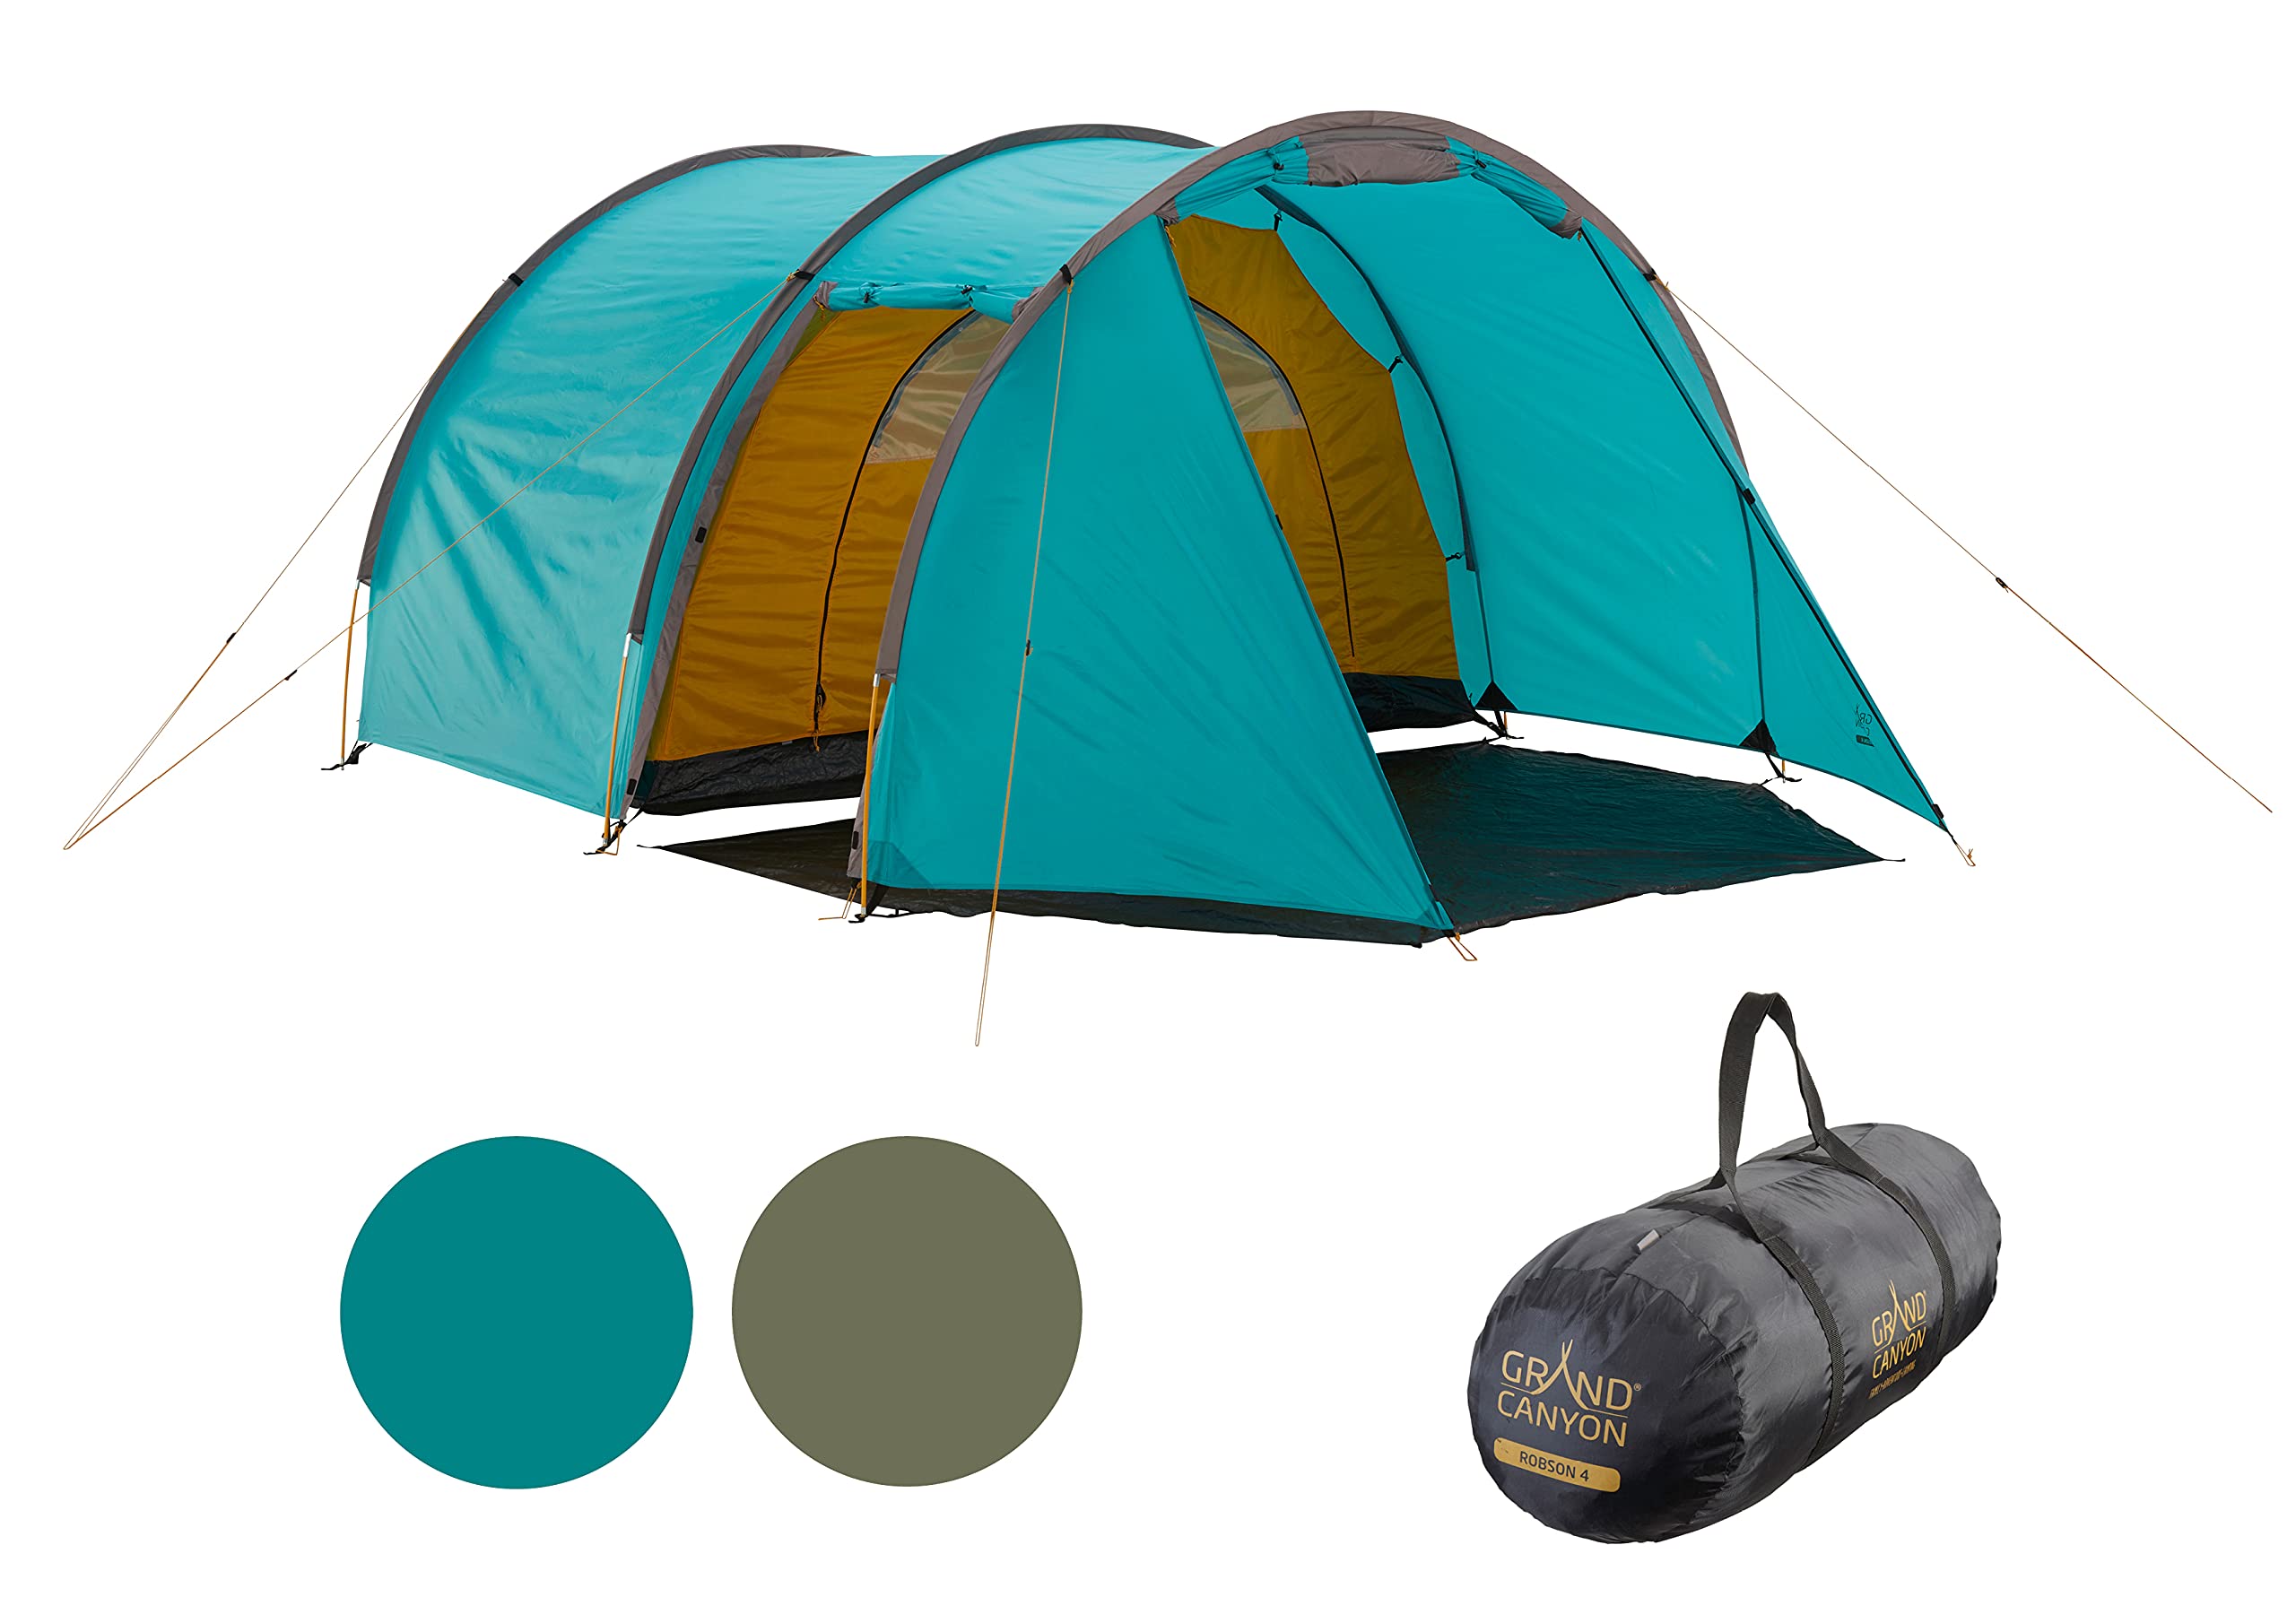 Grand Canyon Robson 4 - Tunnelzelt für 4 Personen | Ultra-leicht, wasserdicht, kleines Packmaß | Zelt für Trekking, Camping, Outdoor | Blue Grass (Blau)